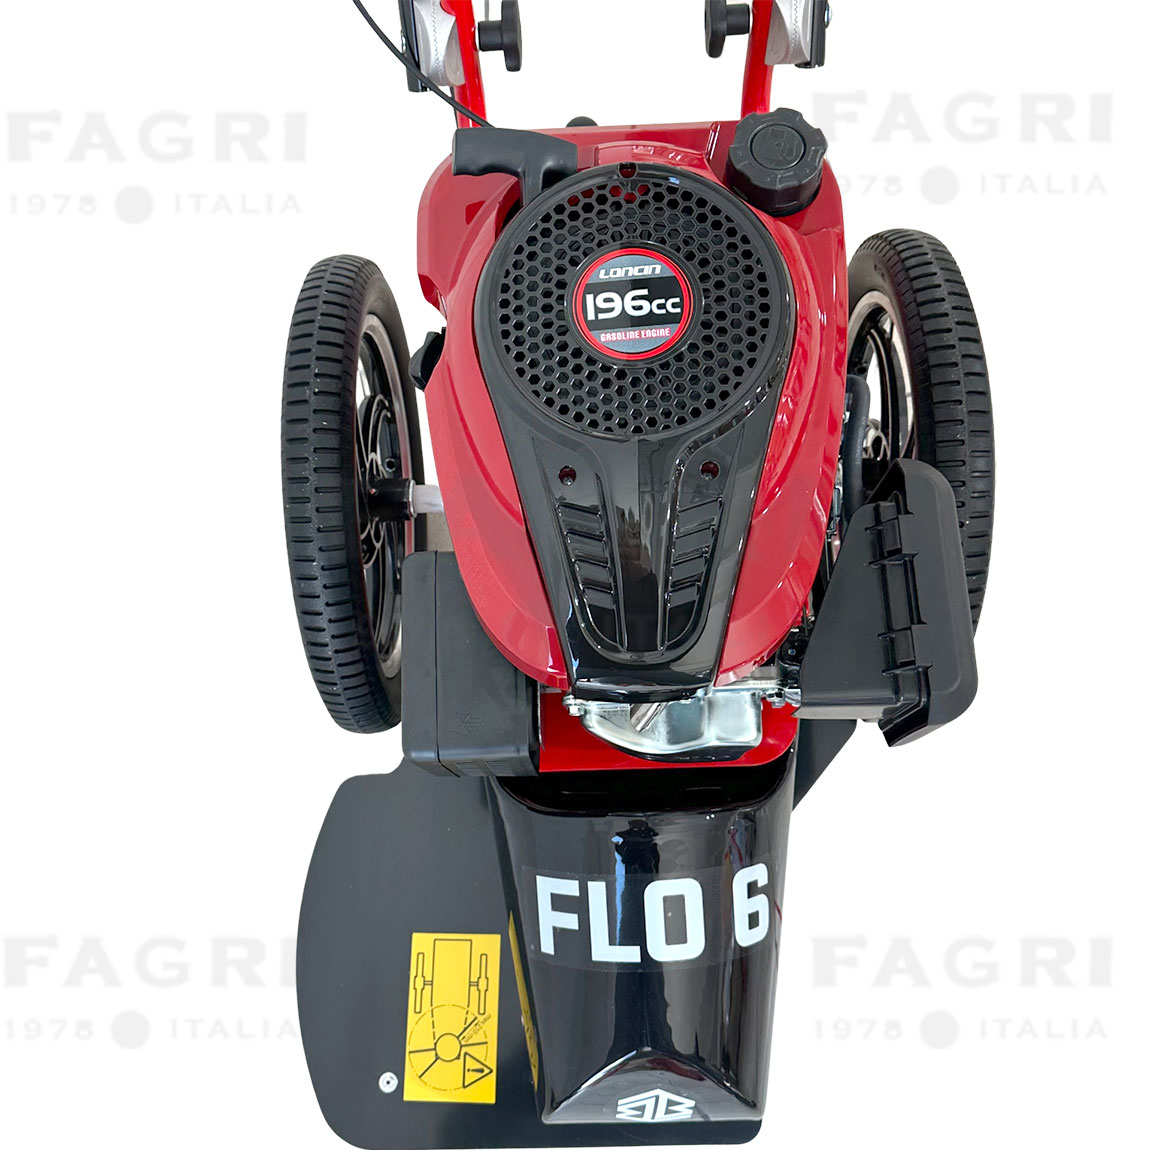 Il decespugliatore a ruote Blue Bird modello Flo6 è uno strumento di taglio a benzina progettato per l'uso su terreni incolti e difficili, come siepi, arbusti, cespugli e bordi stradali.